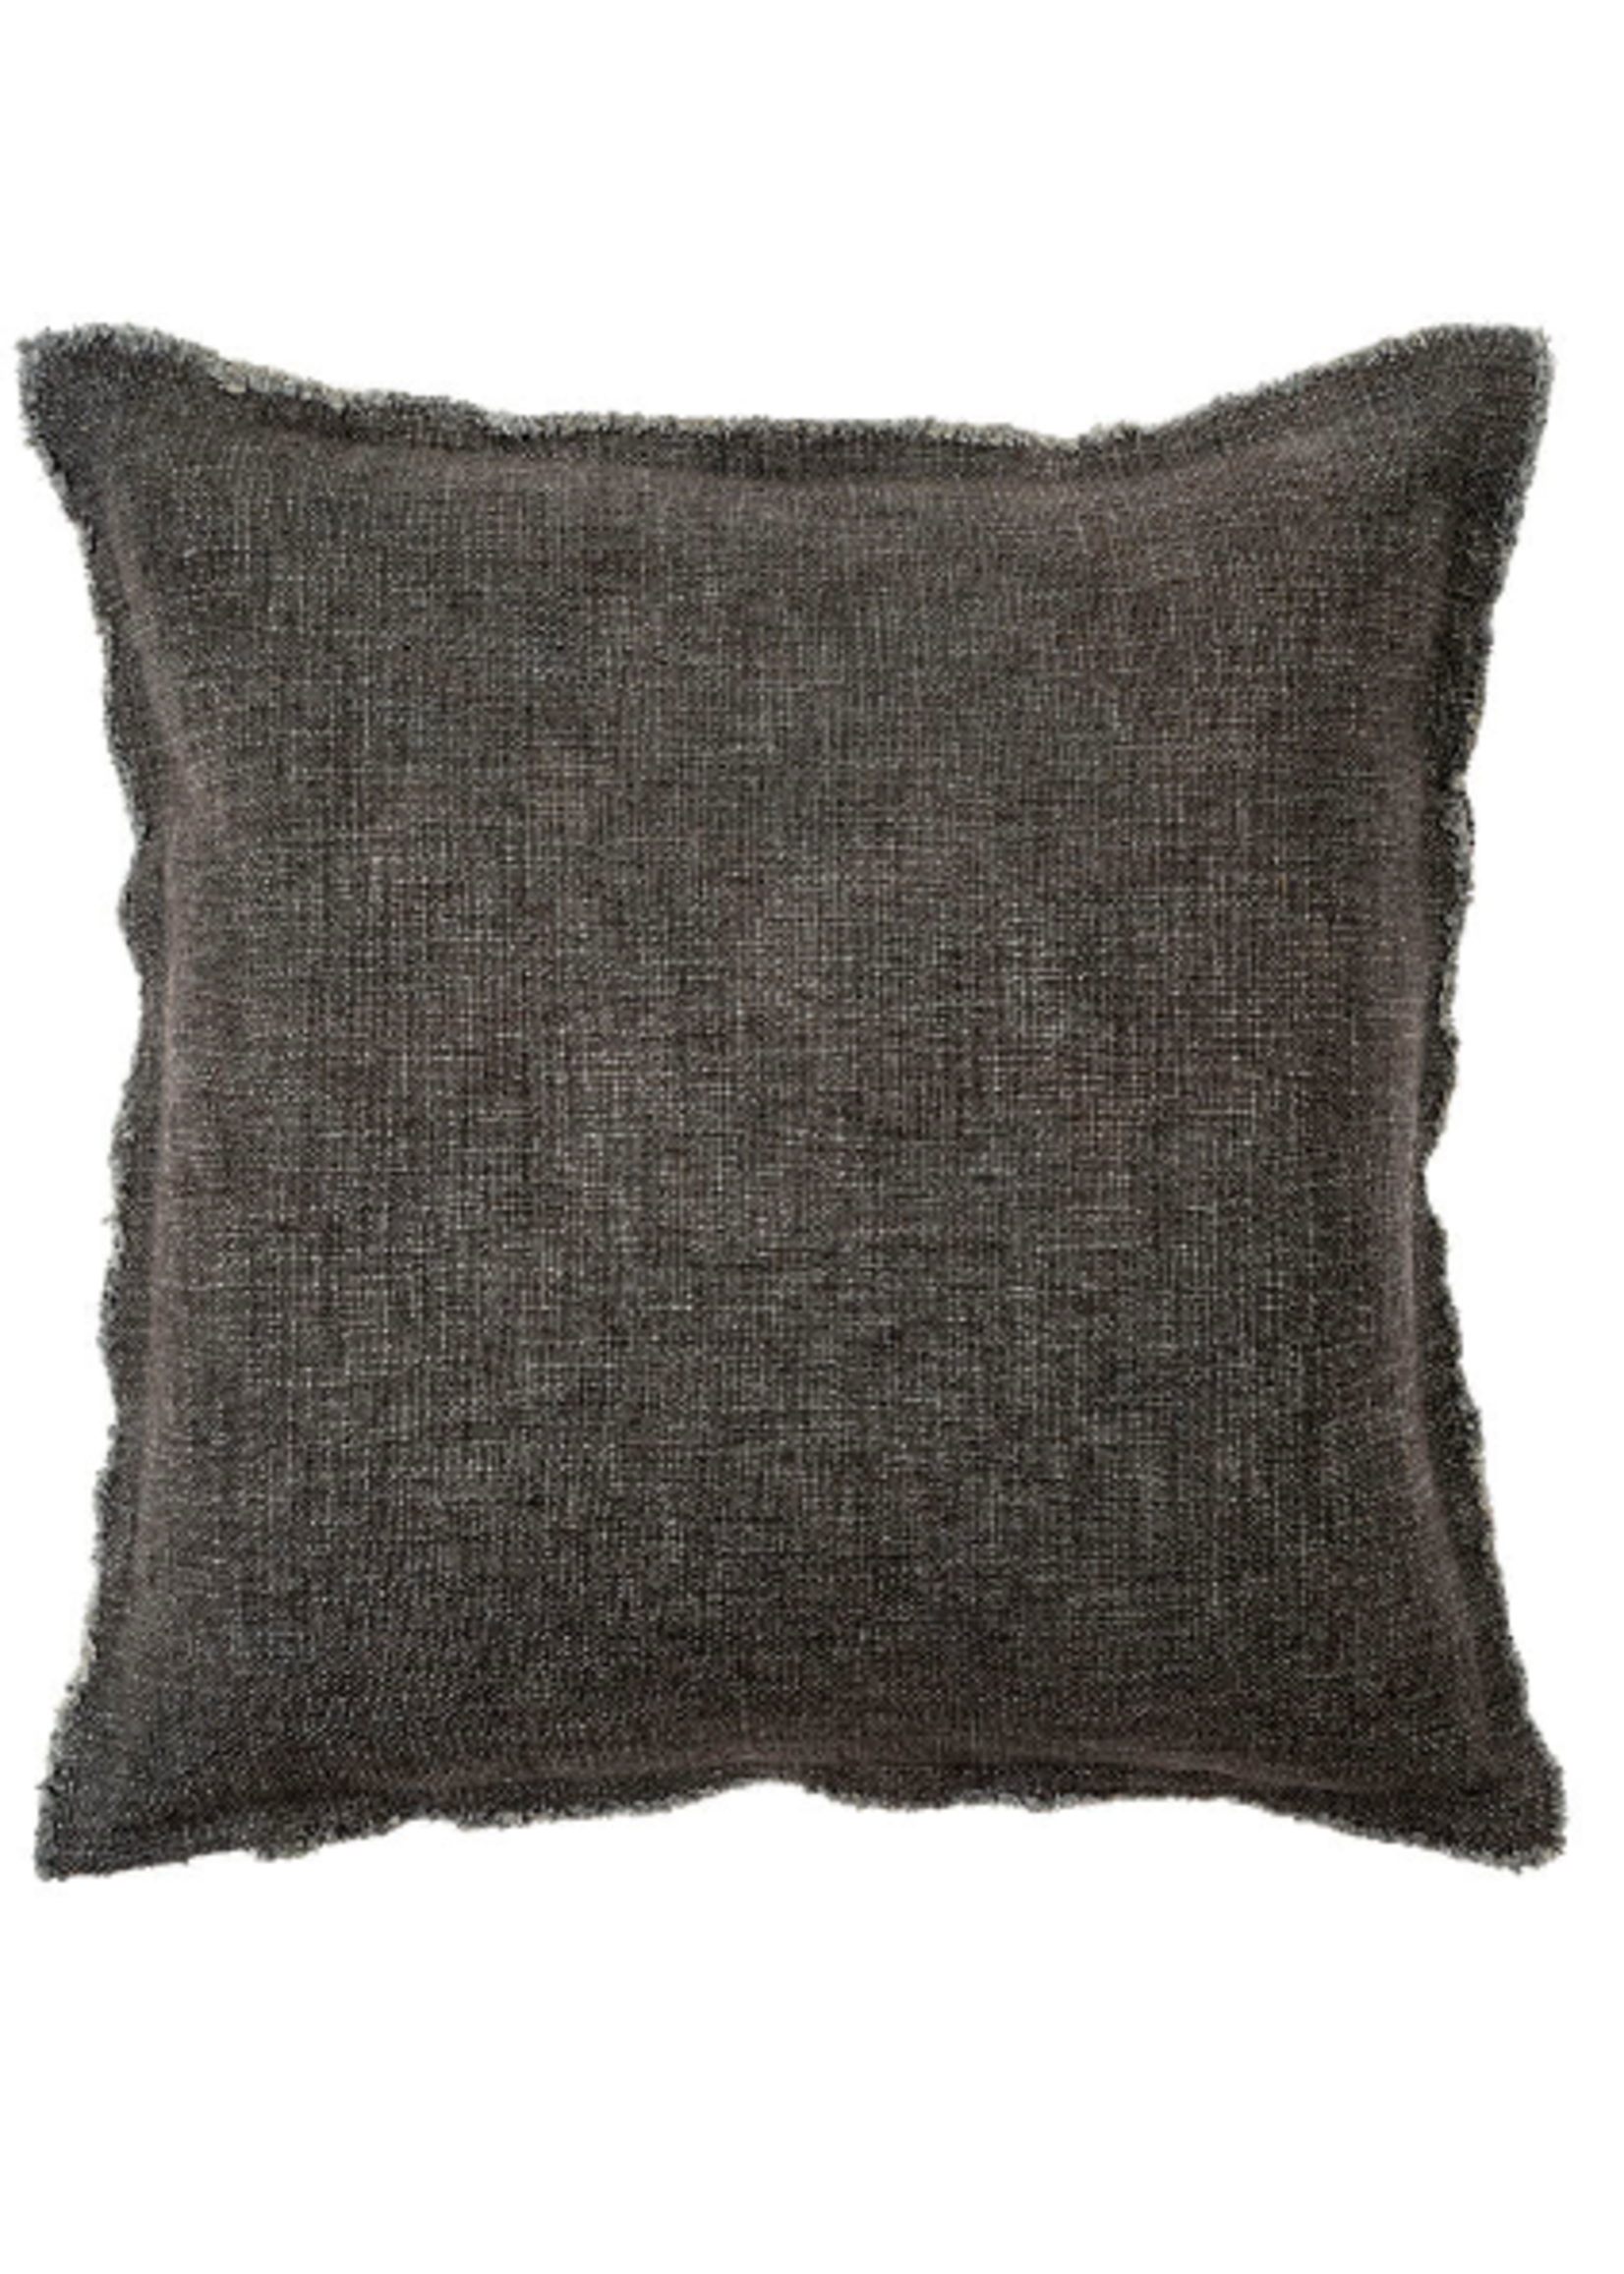 Indaba Indaba Lina Linen Pillow 24x24 Steel Grey